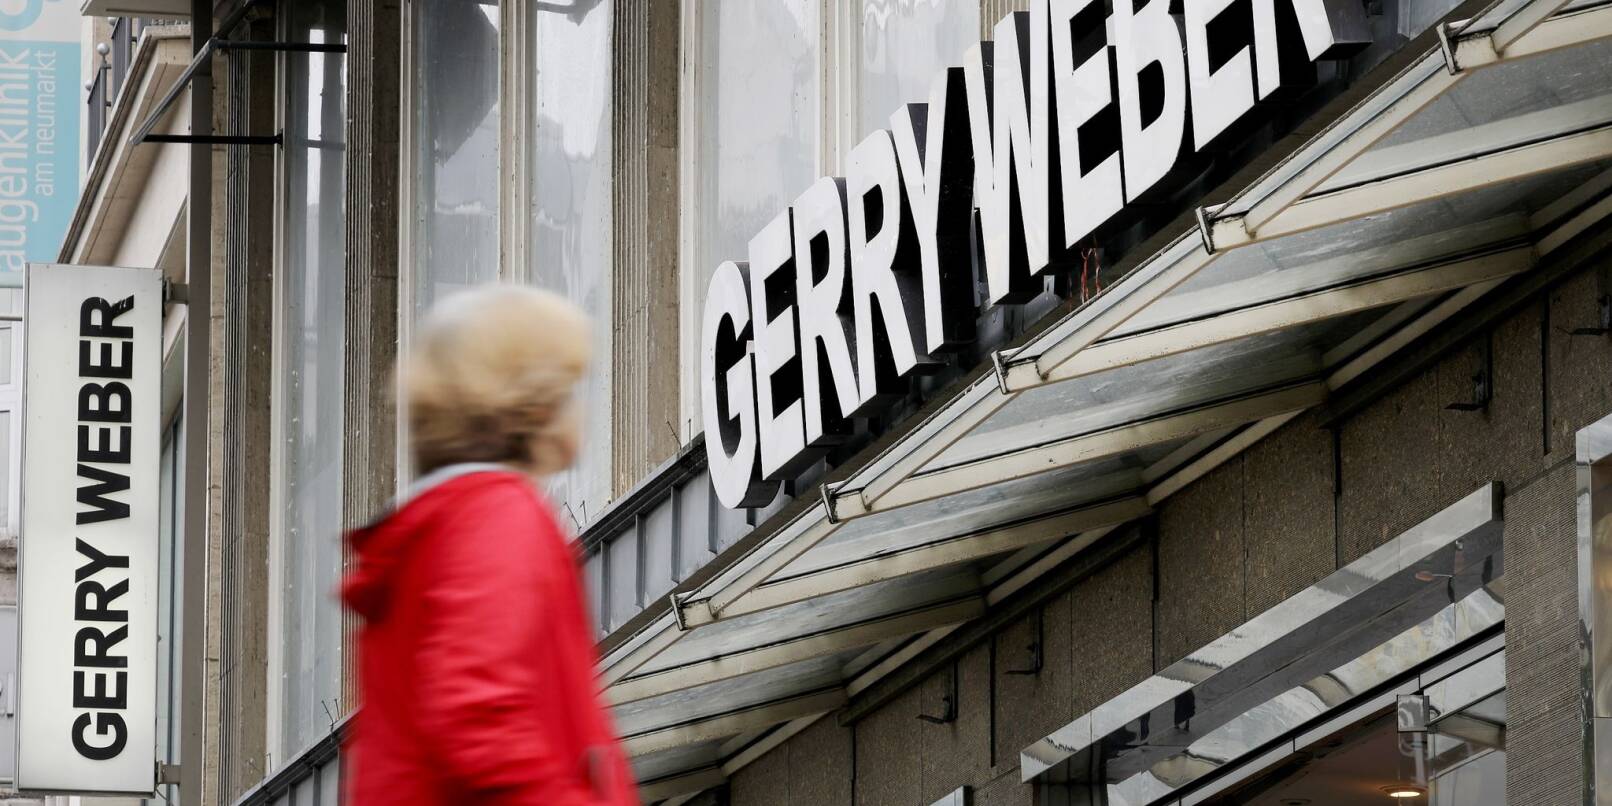 Eine Passantin vor einer Filiale des Modeherstellers Gerry Weber in Köln: Der Modeherstaeeler will zurück aus Kurs.